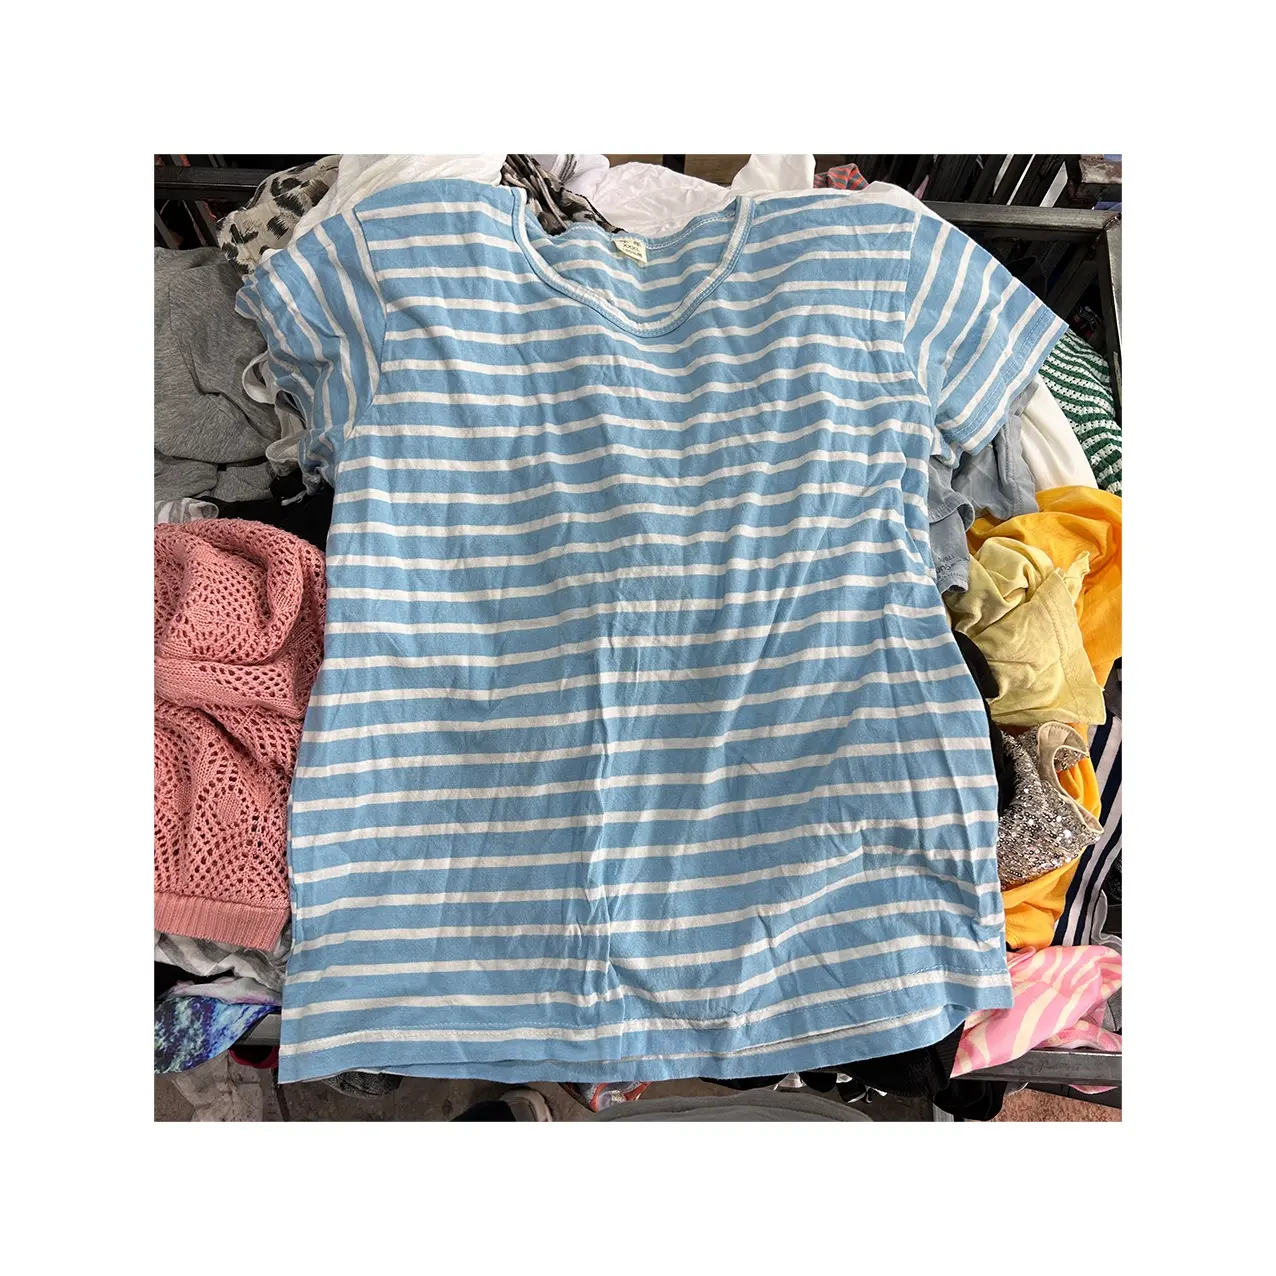 Vente en gros de vêtements d'occasion T-shirts d'été en coton pour dames filles vêtements d'occasion mixtes balles ukay ukay